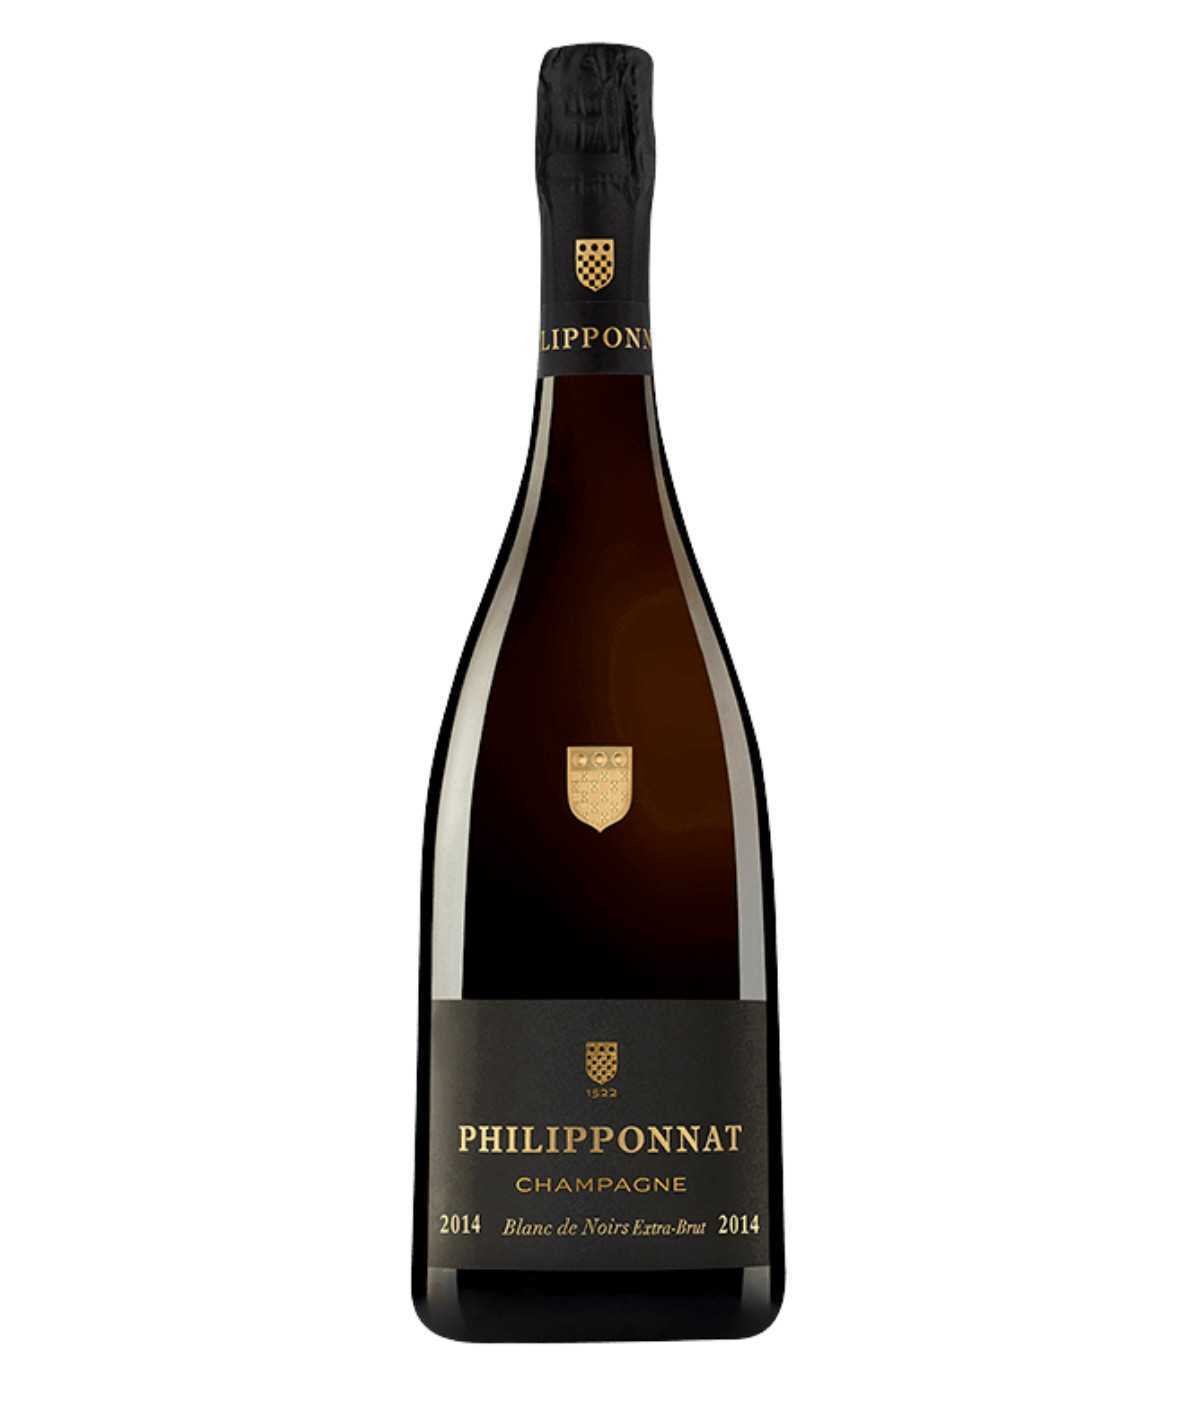 PHILIPPONNAT champagne Blanc de Noirs 2018 vintage